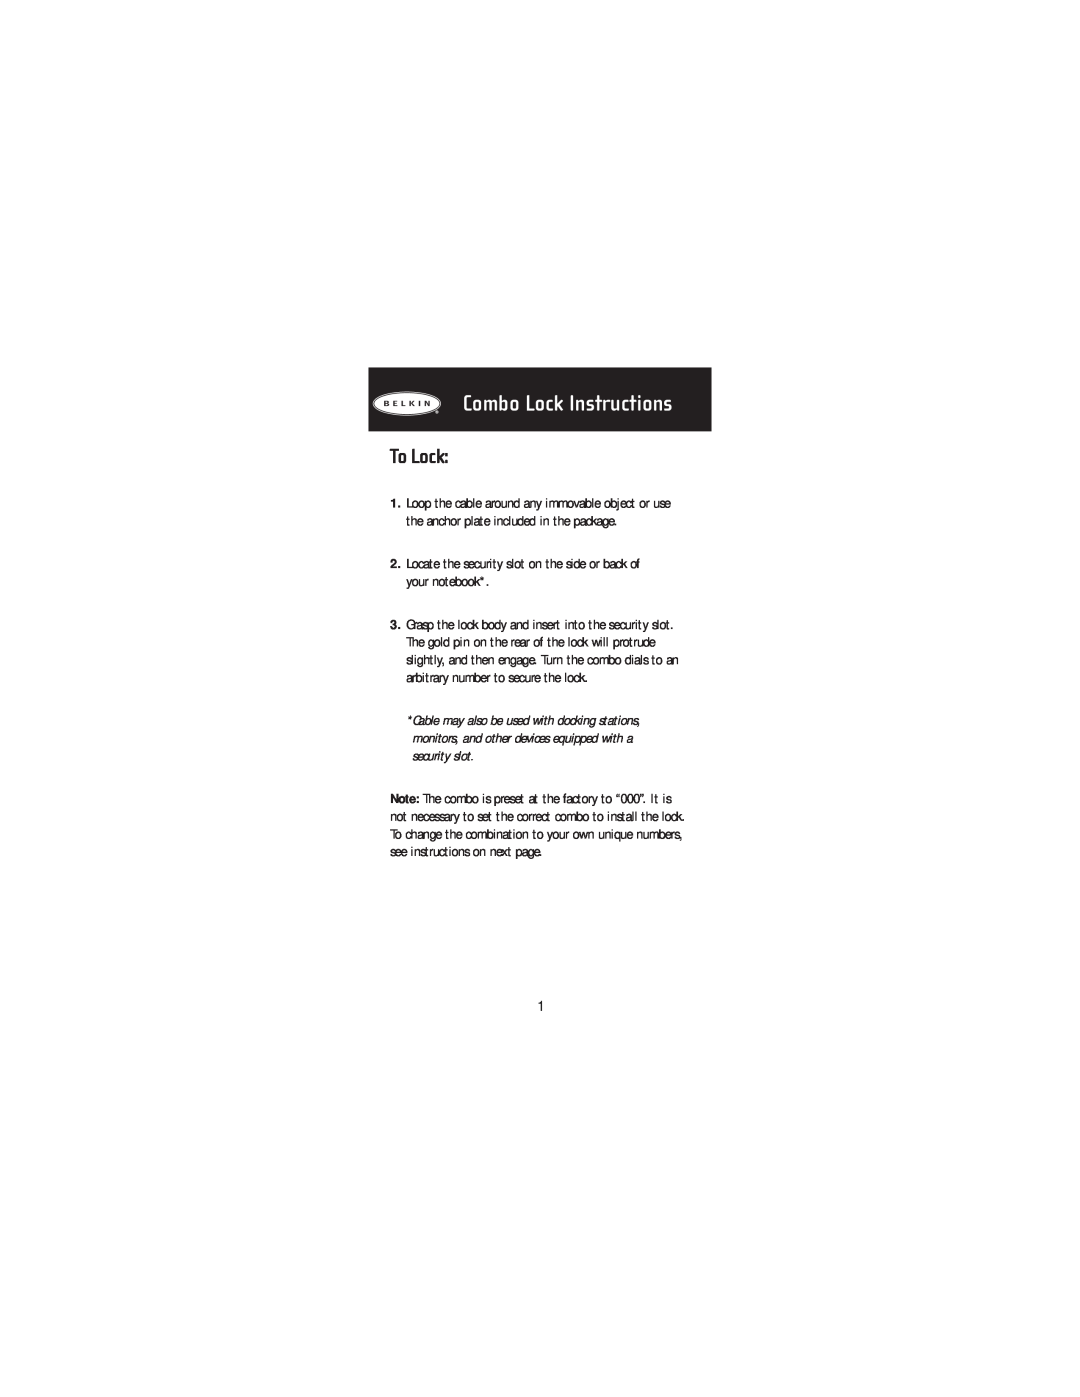 Belkin F8E503, P74101tt manual To Lock, Combo Lock Instructions 